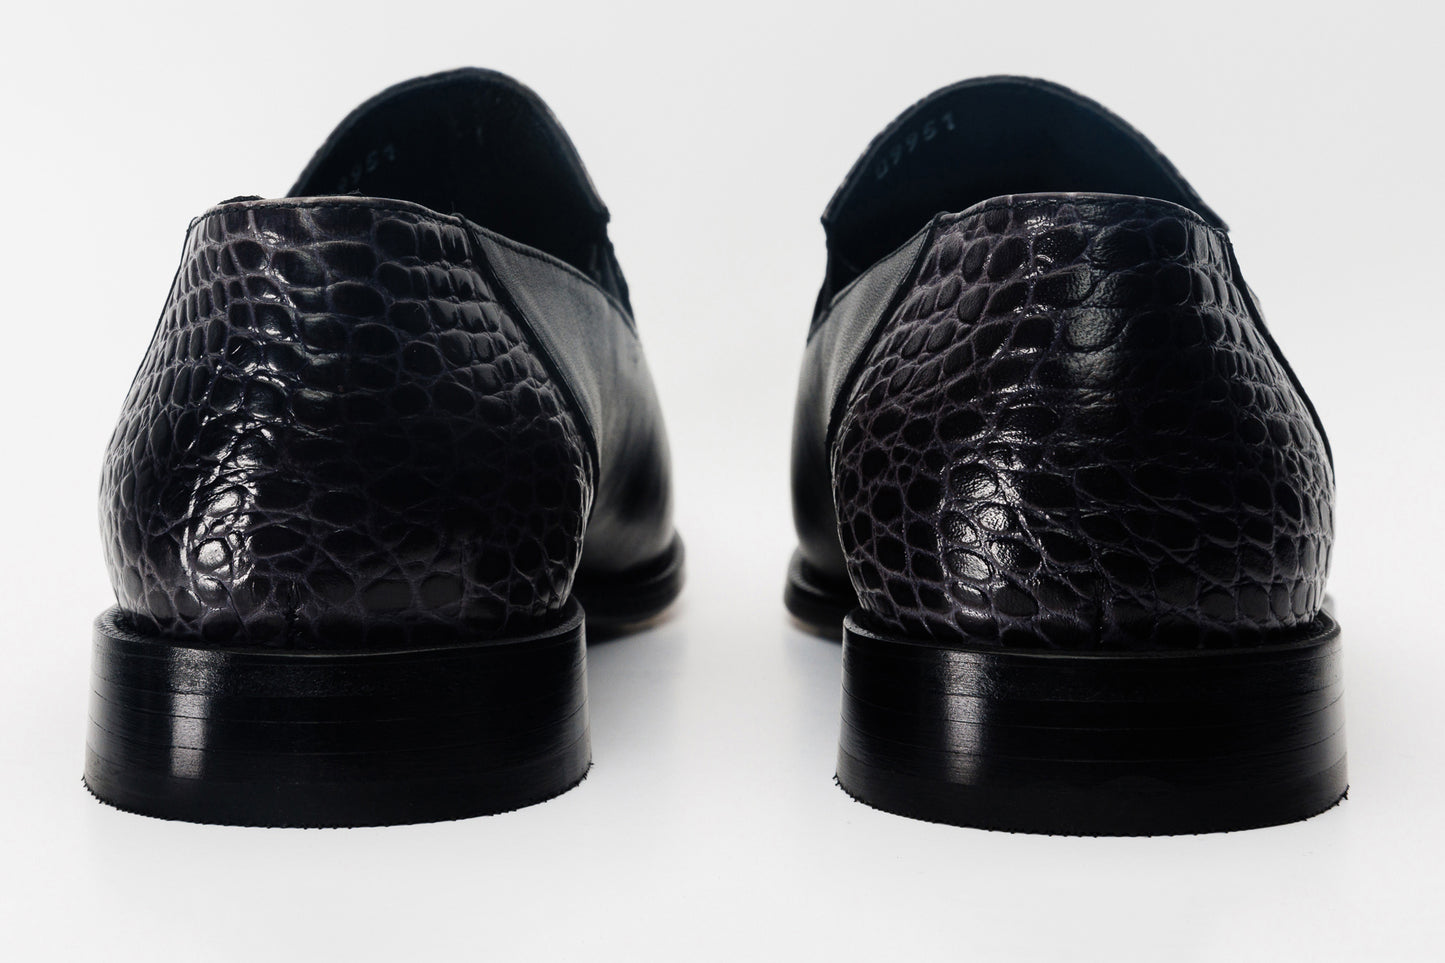 The Mississippi Black Leather Loafer Men Shoe